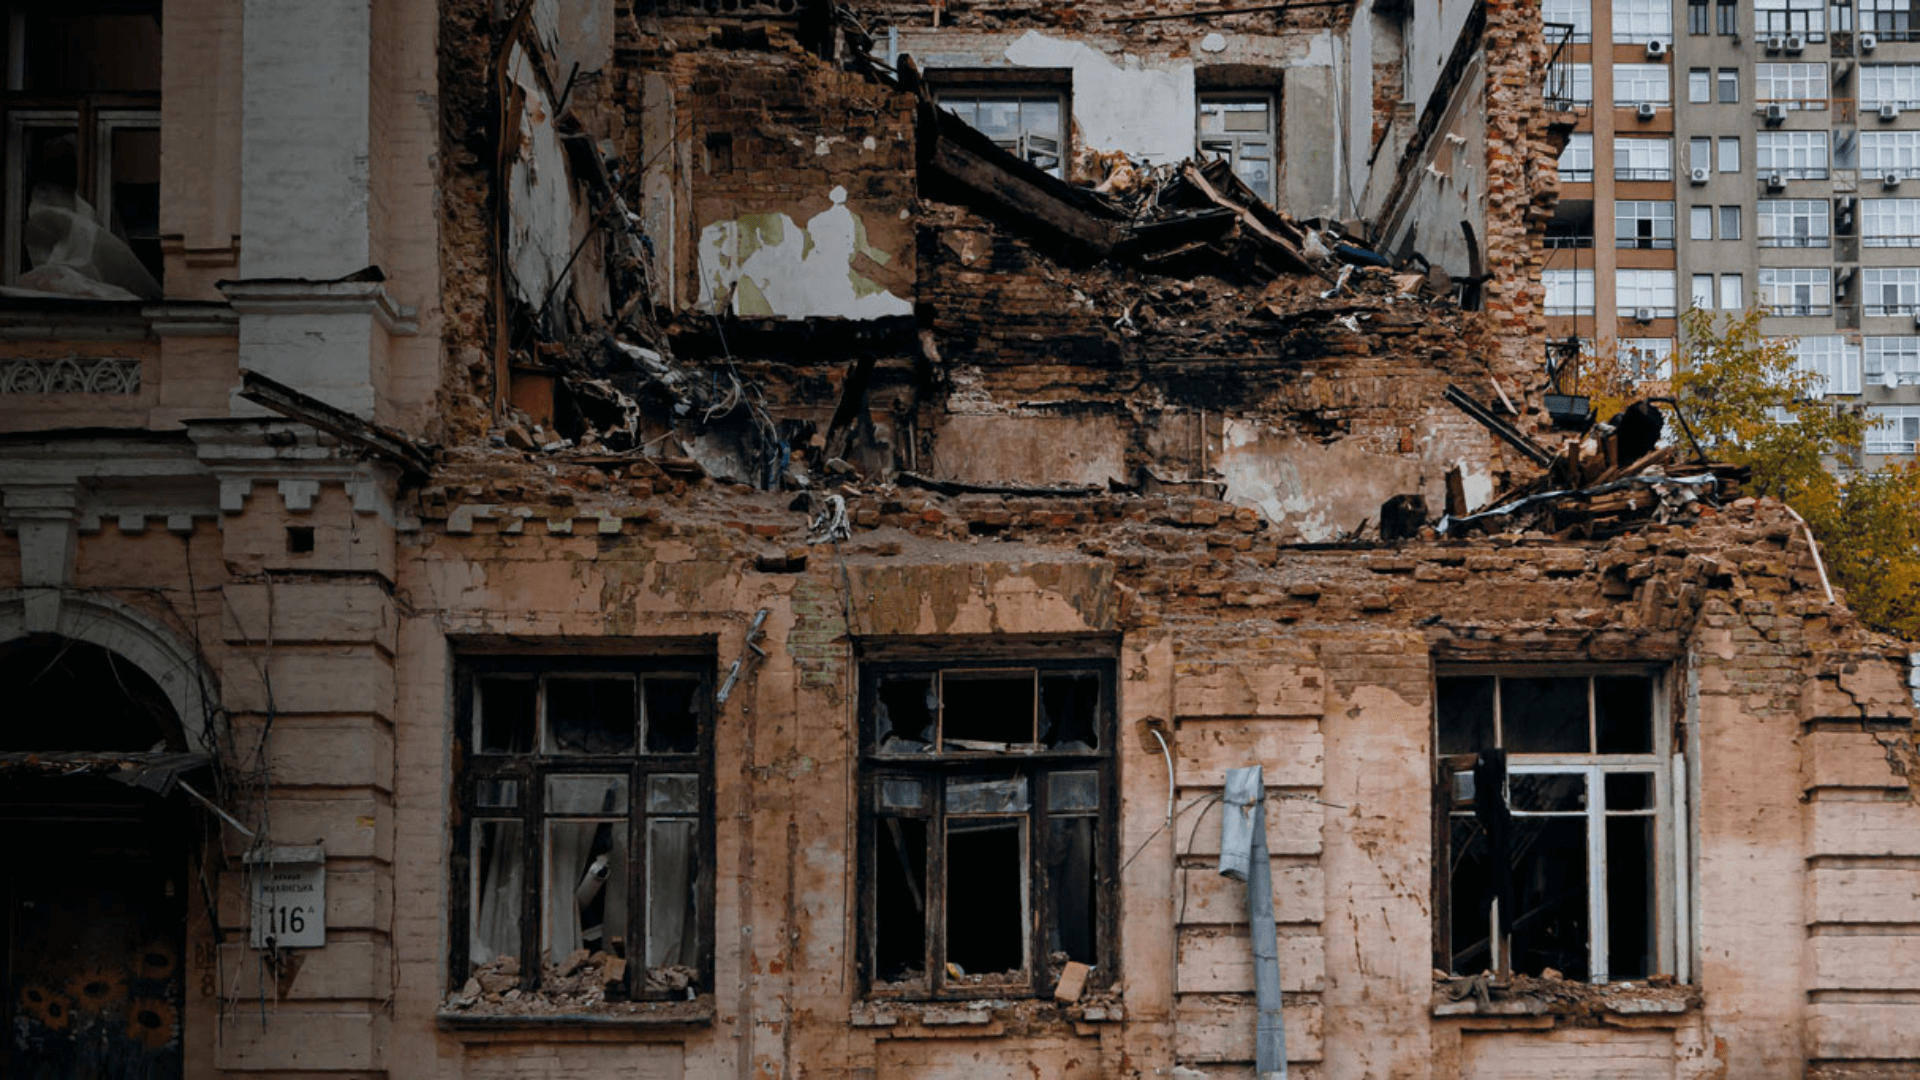 zu sehen ist ein zerstörtes Haus in der Ukraine